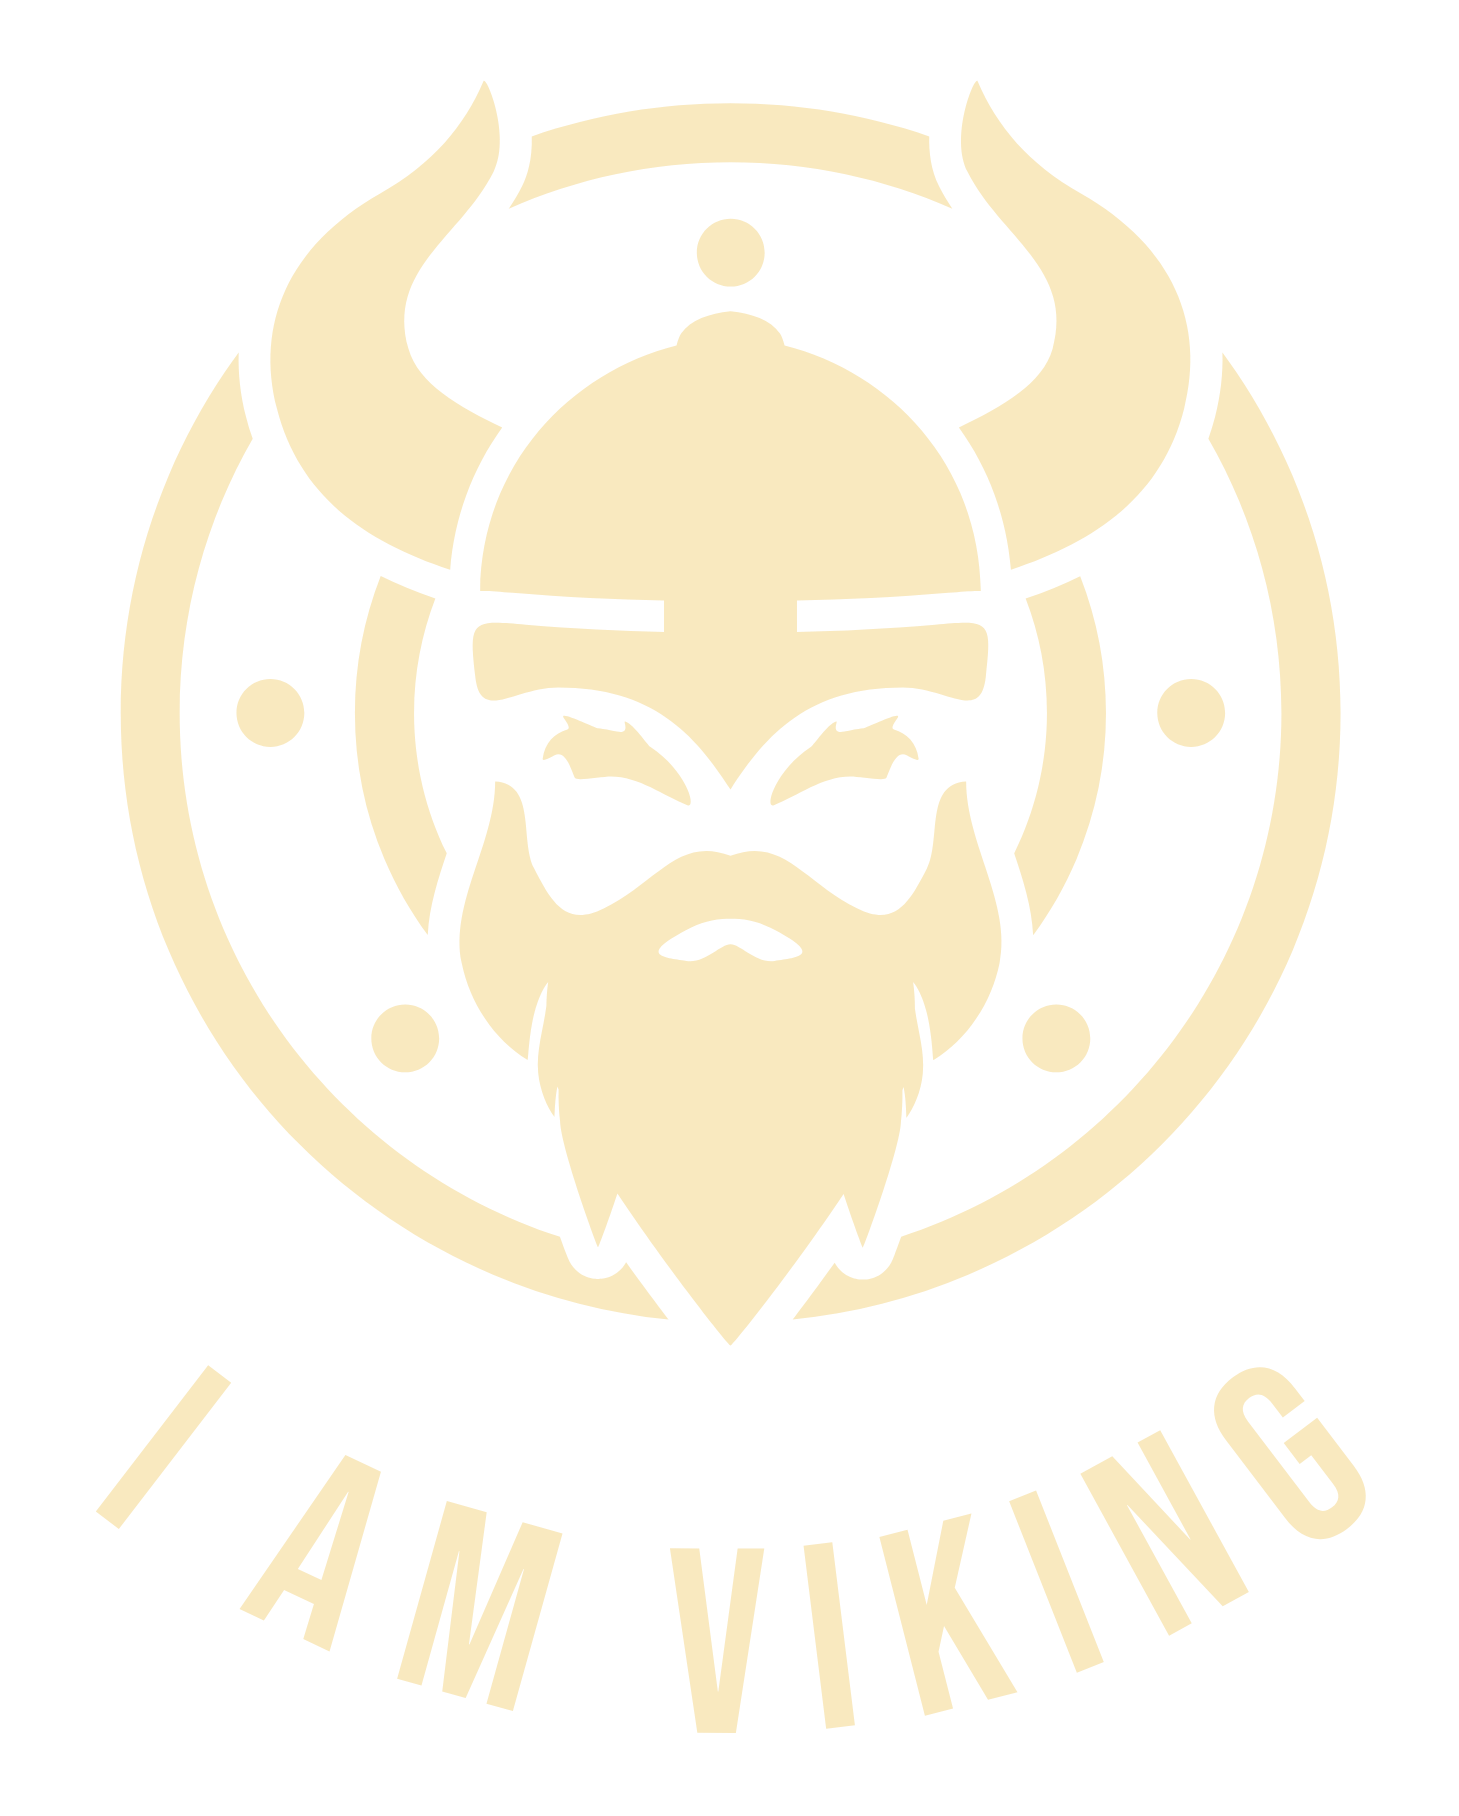 I am Viking